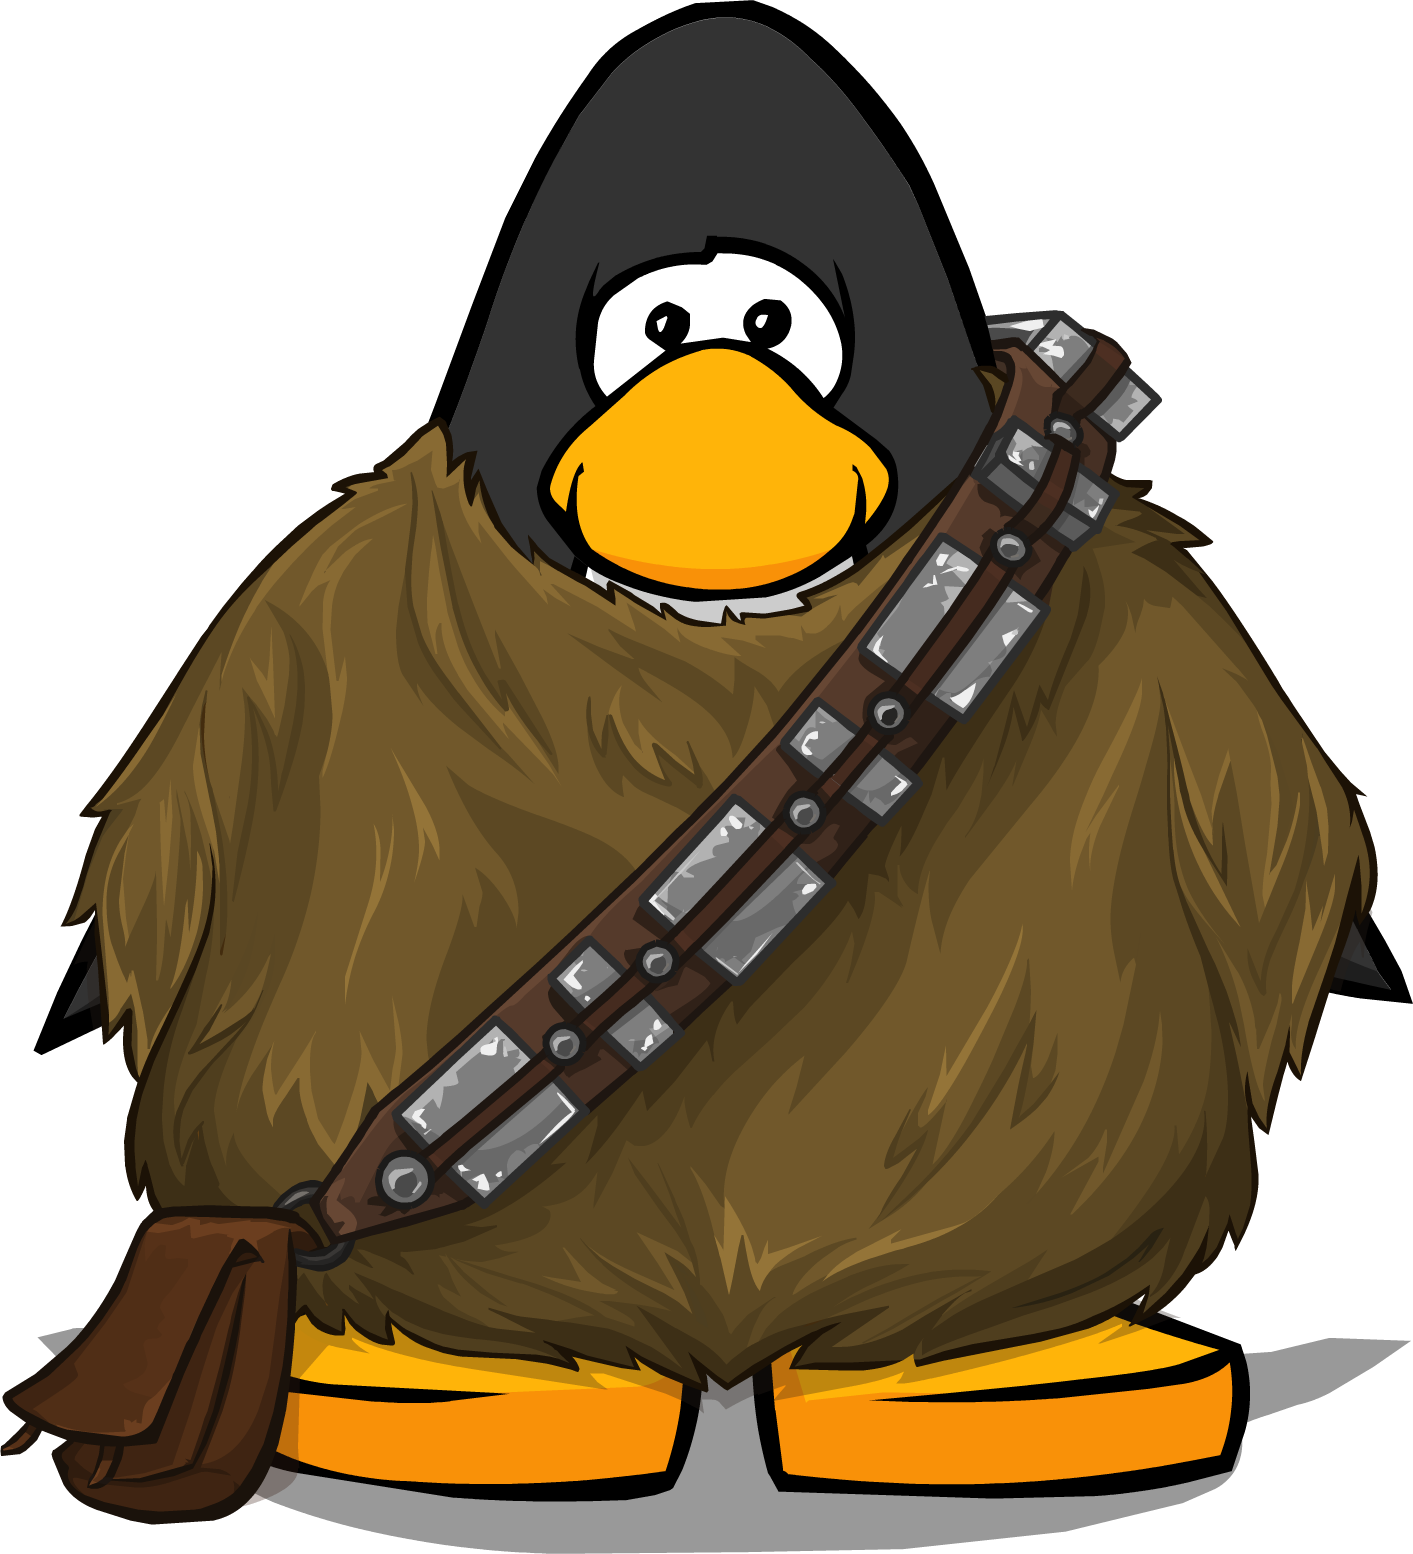 Chewbacca Costume Pc - Club Penguin Horn (1413x1554)